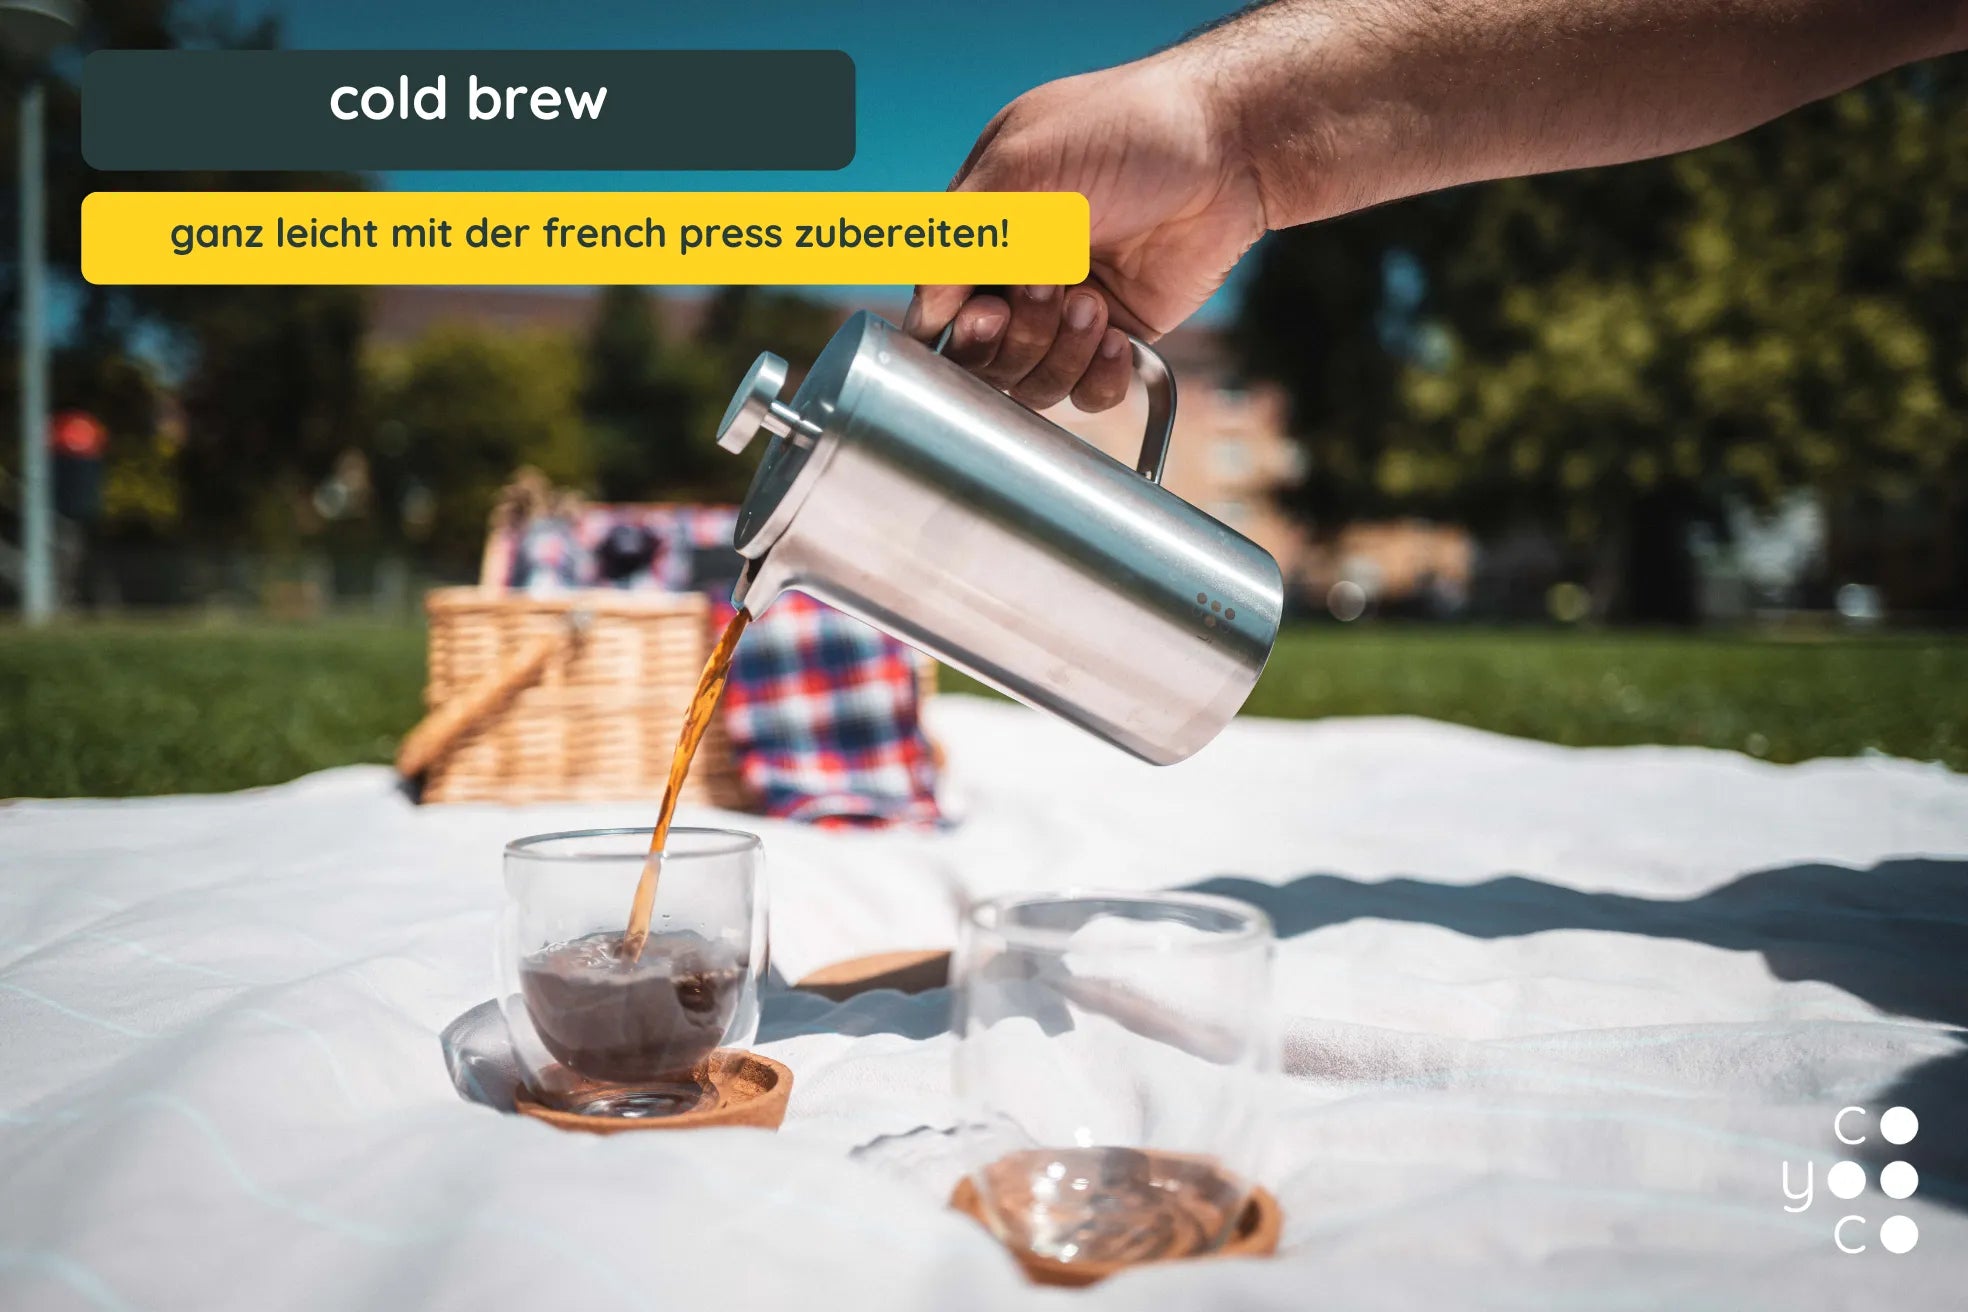 Cold Brew - Trendgetränk aus der French Press